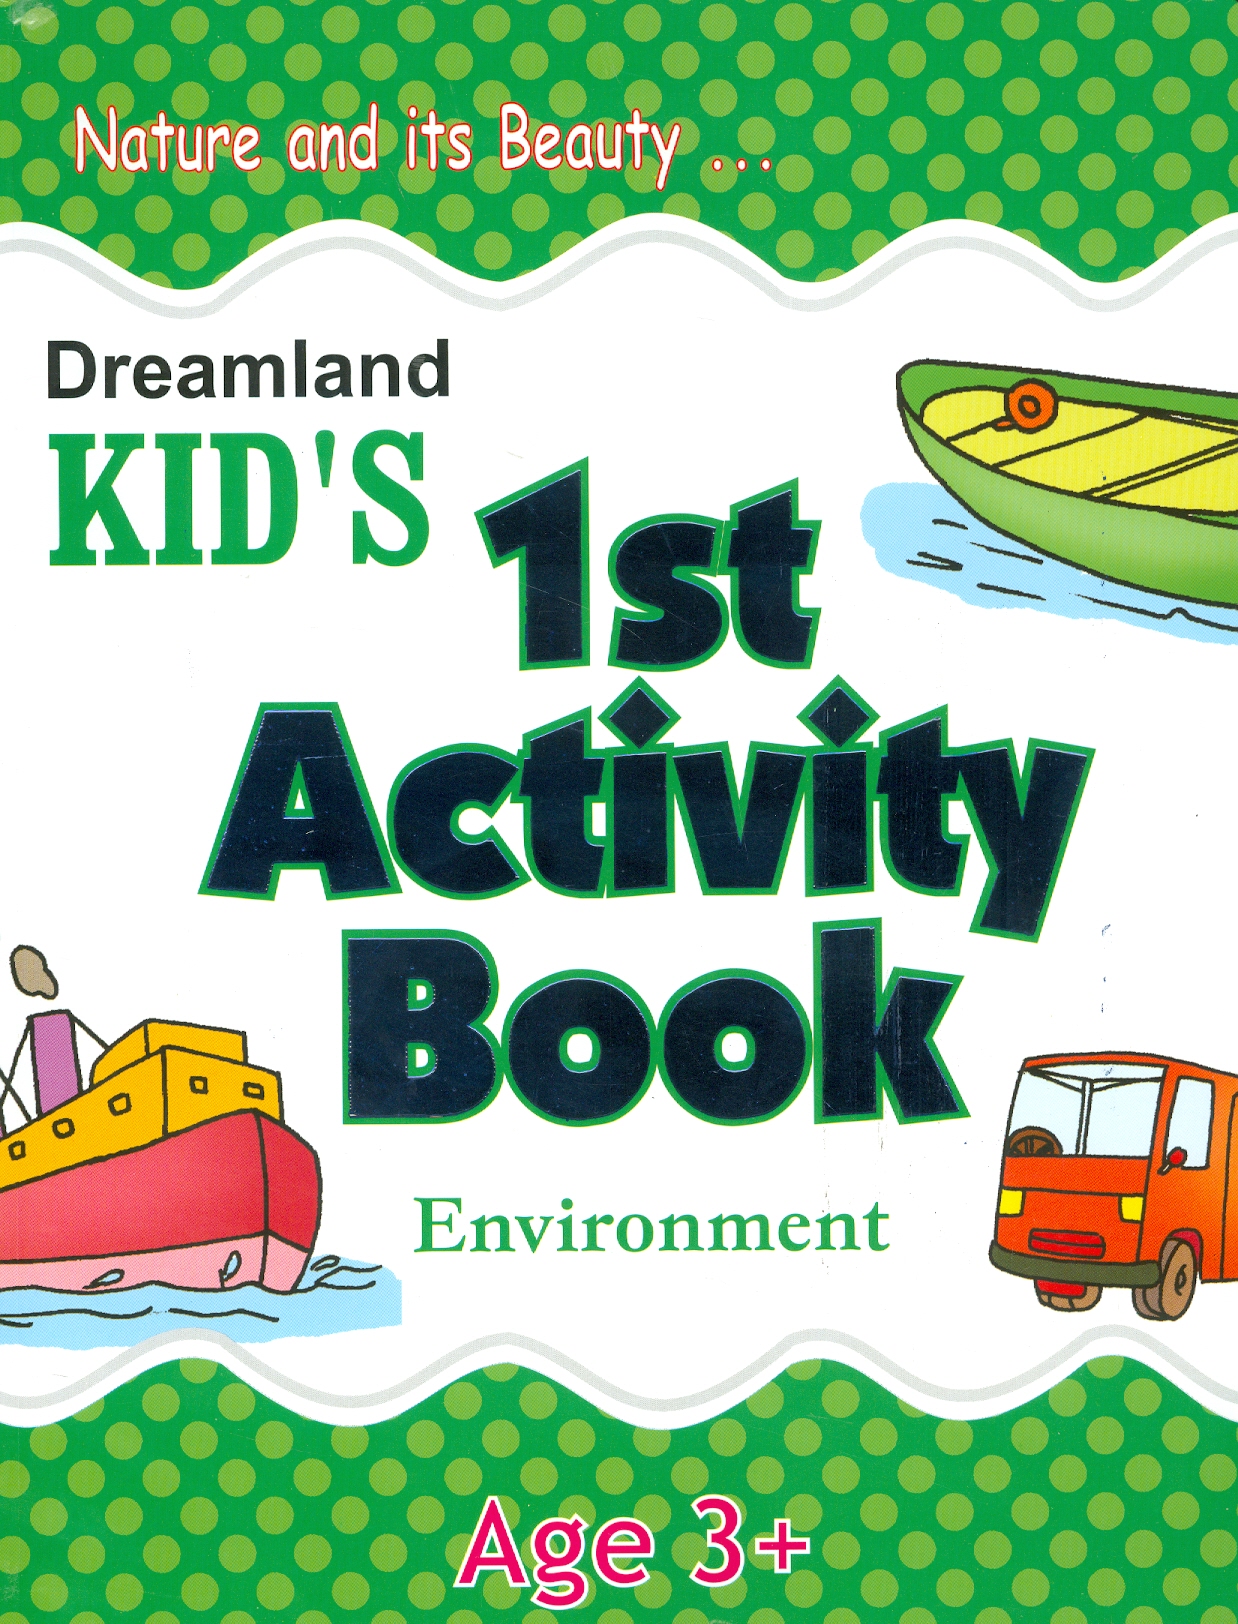 Kid's 1st Activity Book Environment - Age 3+: Nature And Its Beauty (Các Hoạt Động Môi Trường Cho Trẻ 3+ : Thiên Nhiên Diệu Kỳ)